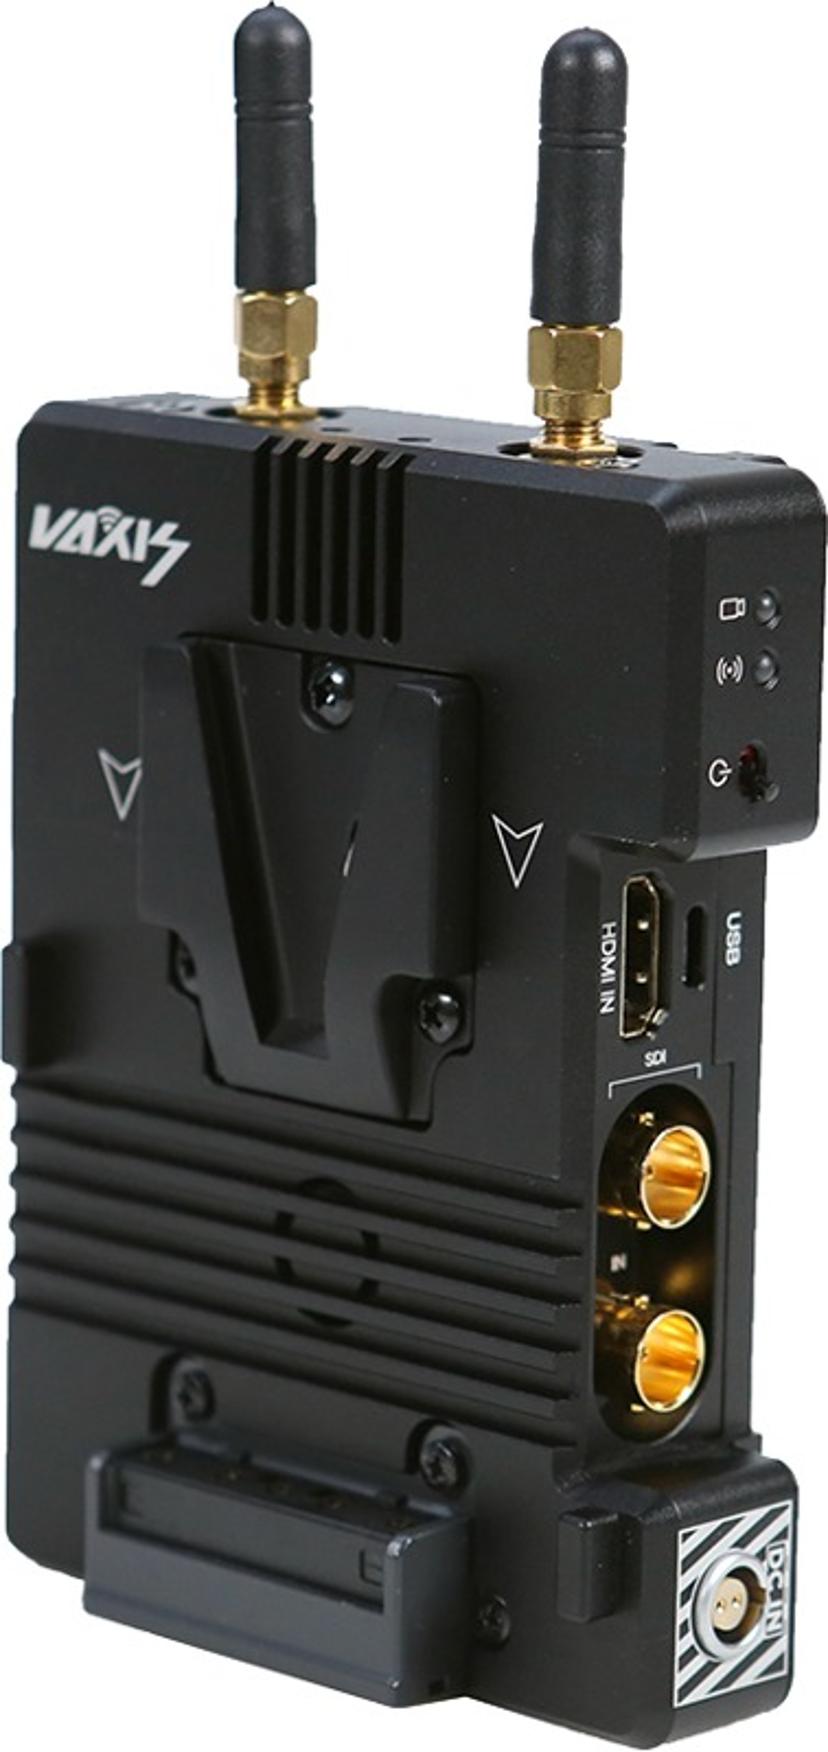 VAXIS Vaxis Storm 3000 DV Kit (V Mount)